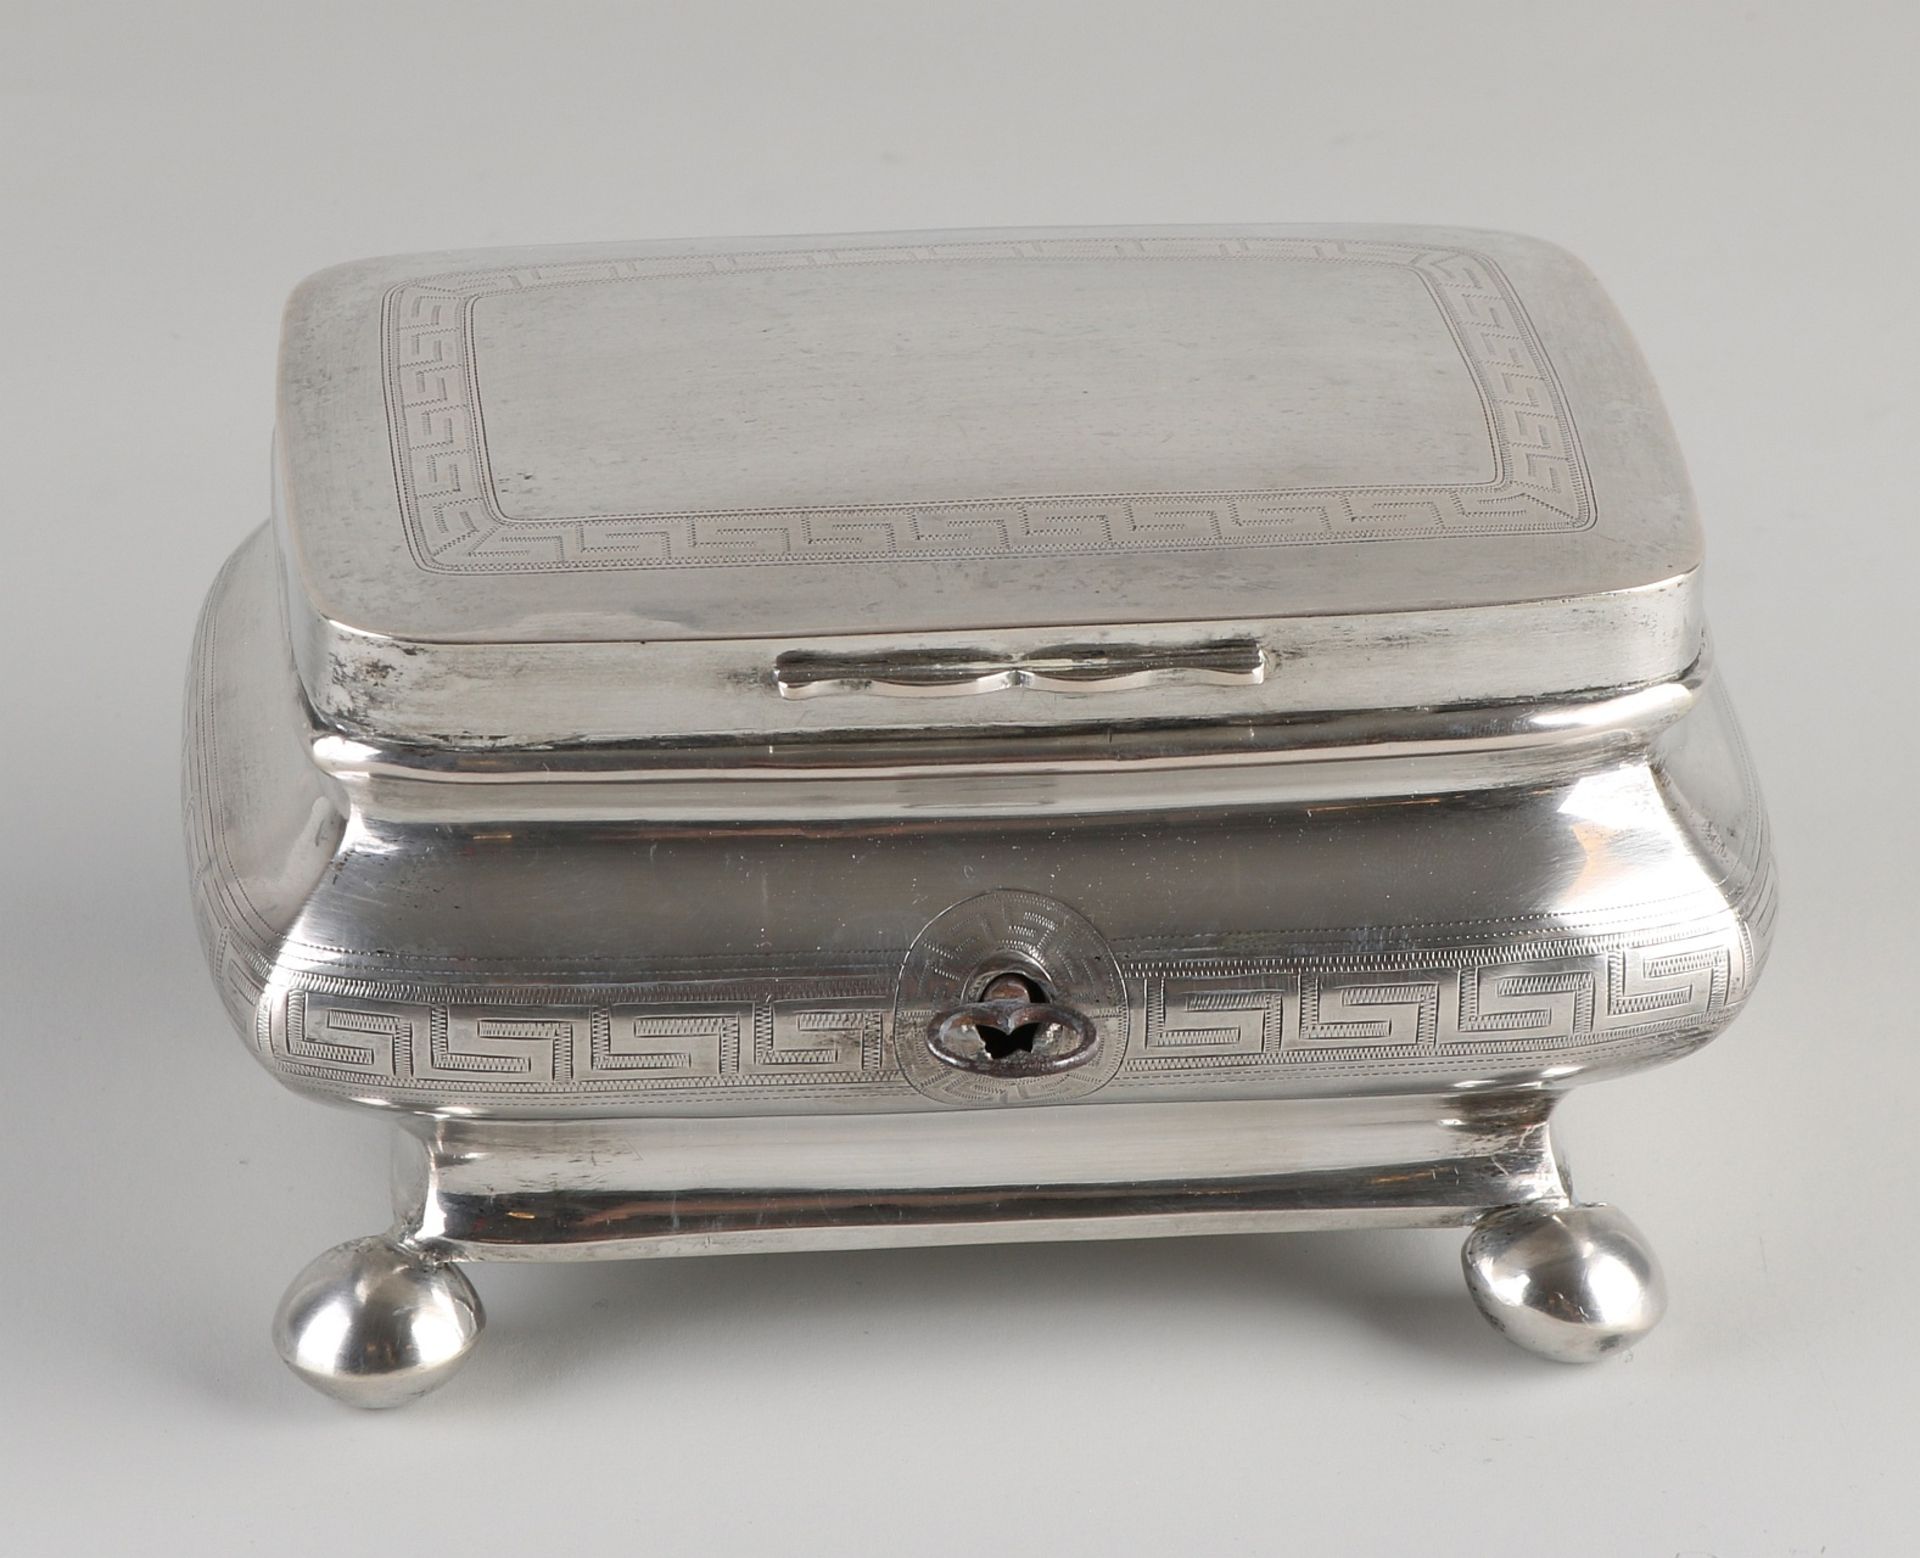 Silberne Teekiste, 900/000, mit Schlüssel. rechteckige Teekiste, dekoriert mit zusammengesetzten